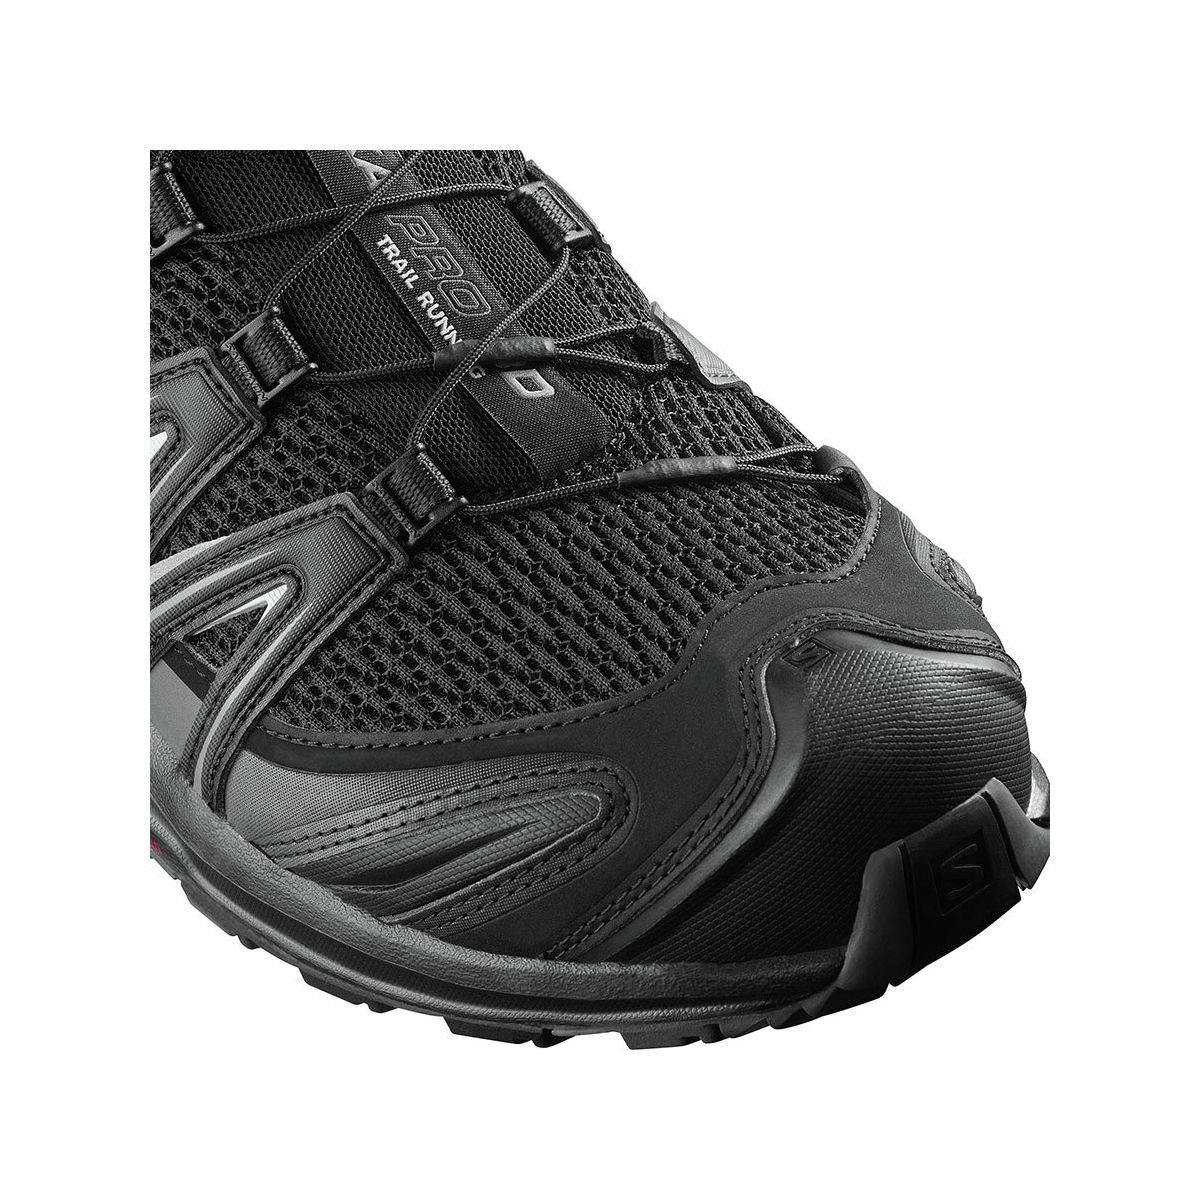 Salomon XA Pro 3D Wide Trail Running - Men's - Footwear